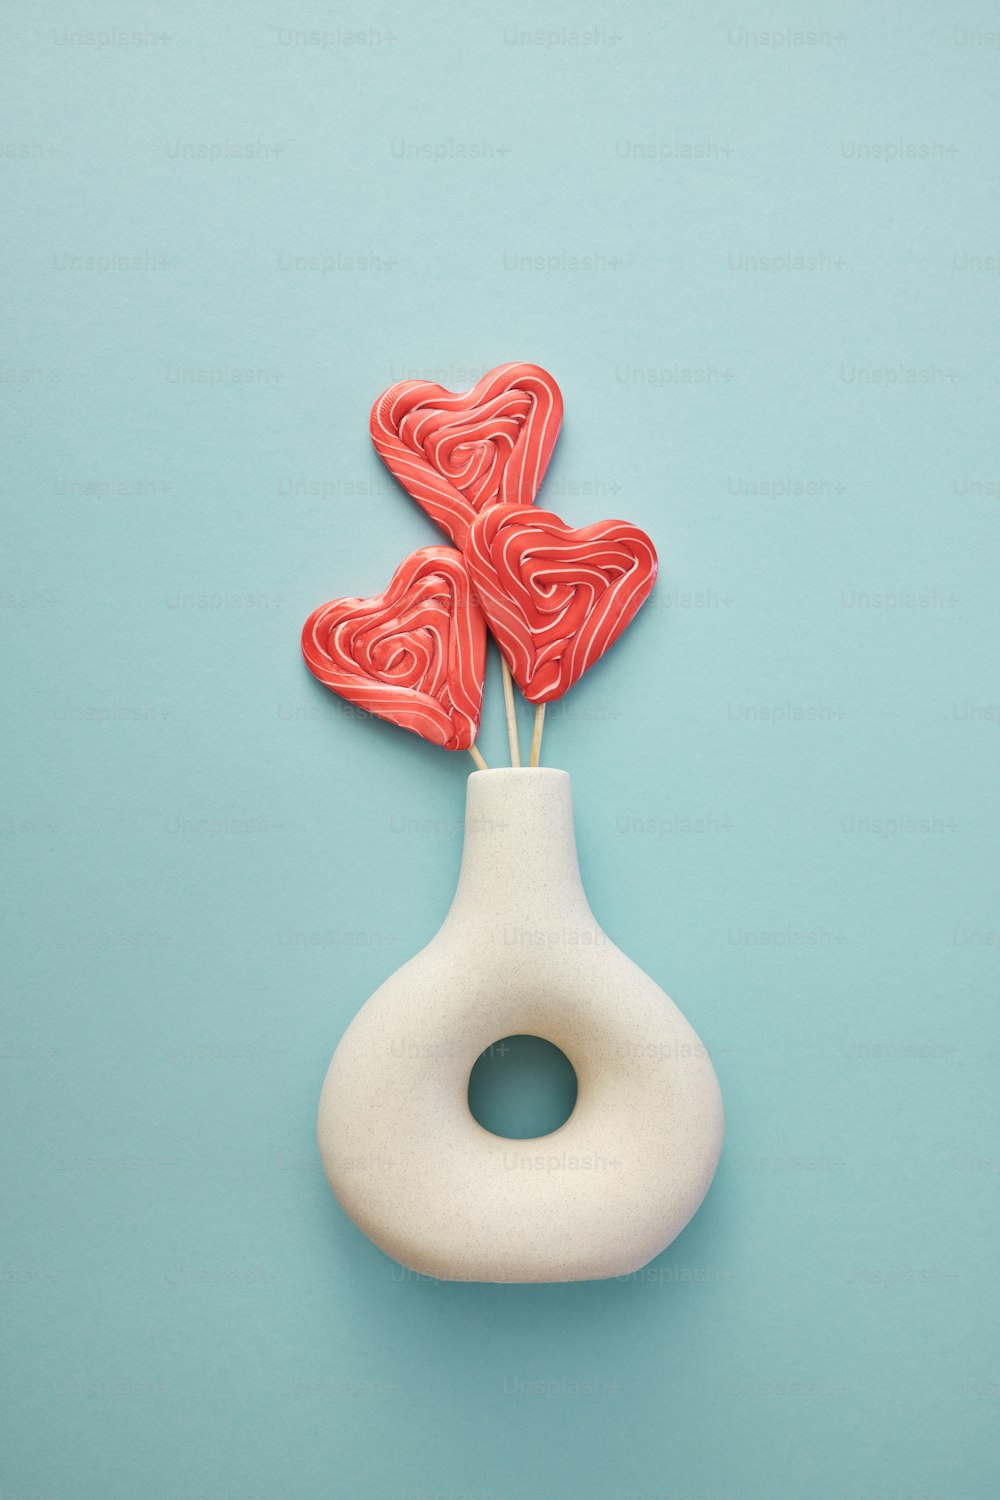 um vaso branco com dois pirulitos vermelhos em forma de coração nele